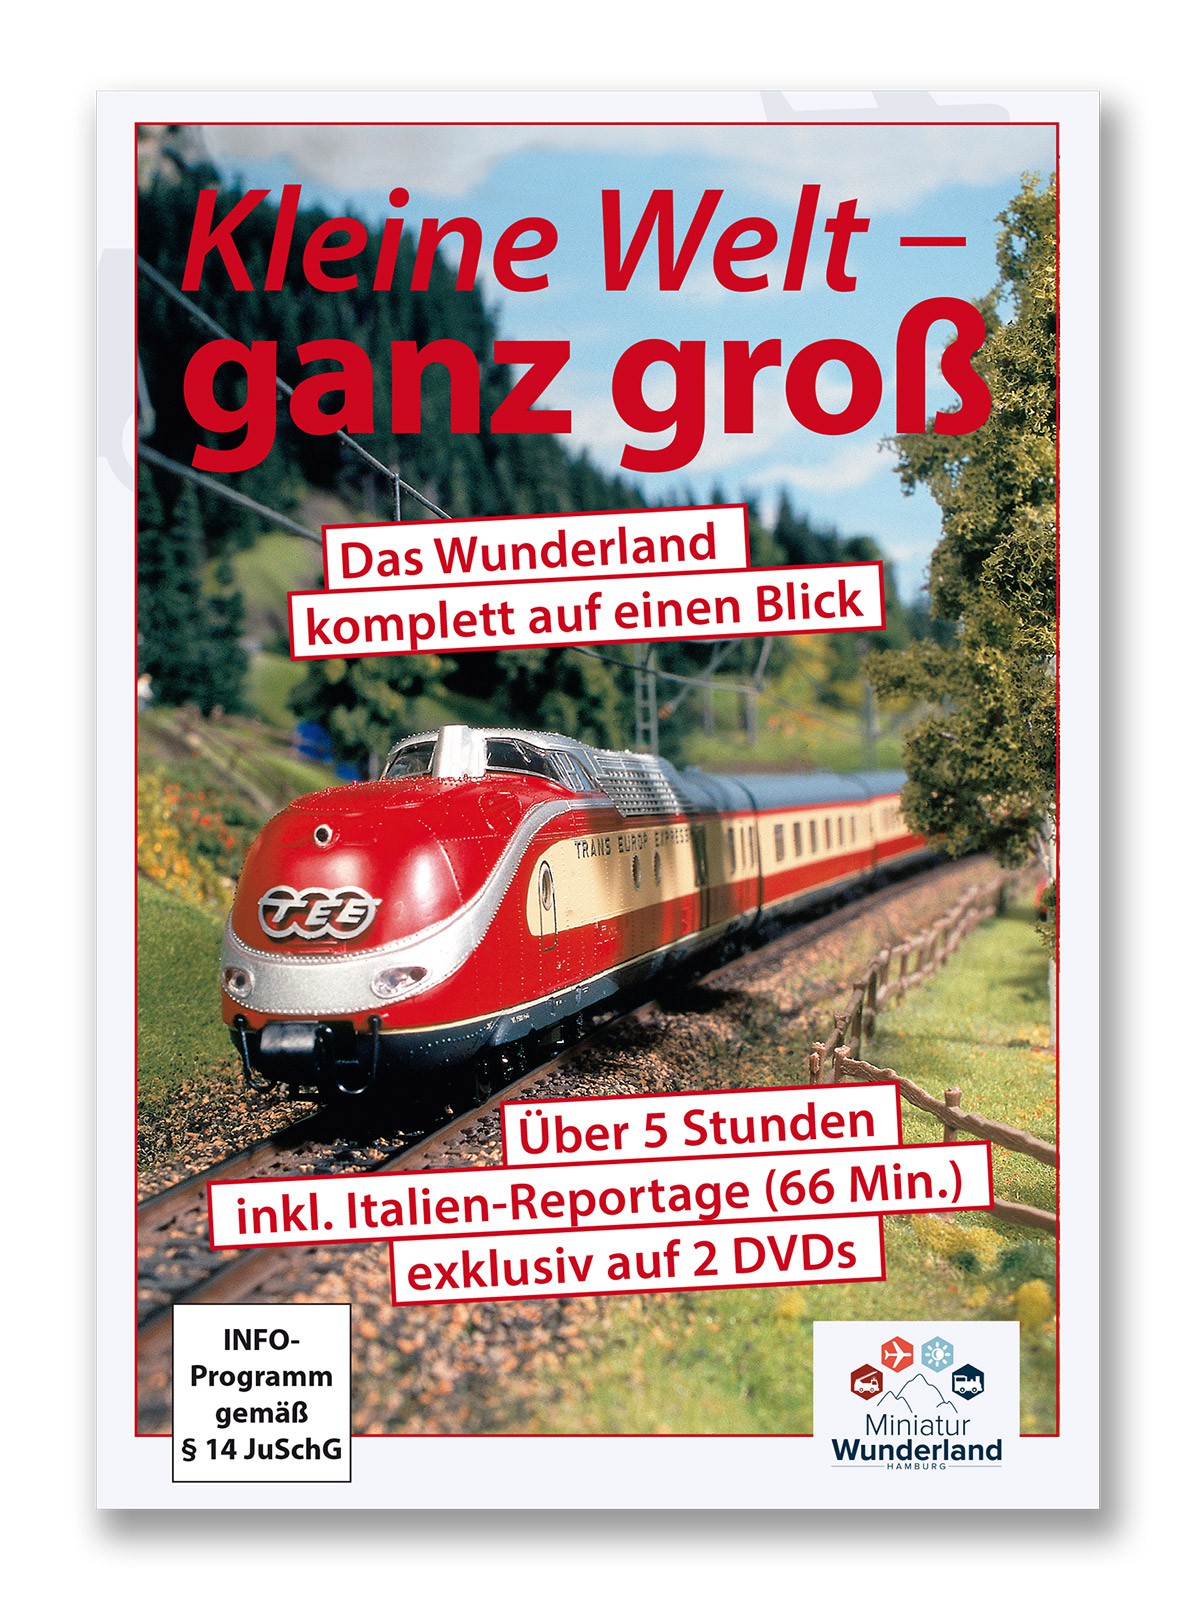 Wunderland double-DVD "Kleine Welt - ganz groß"